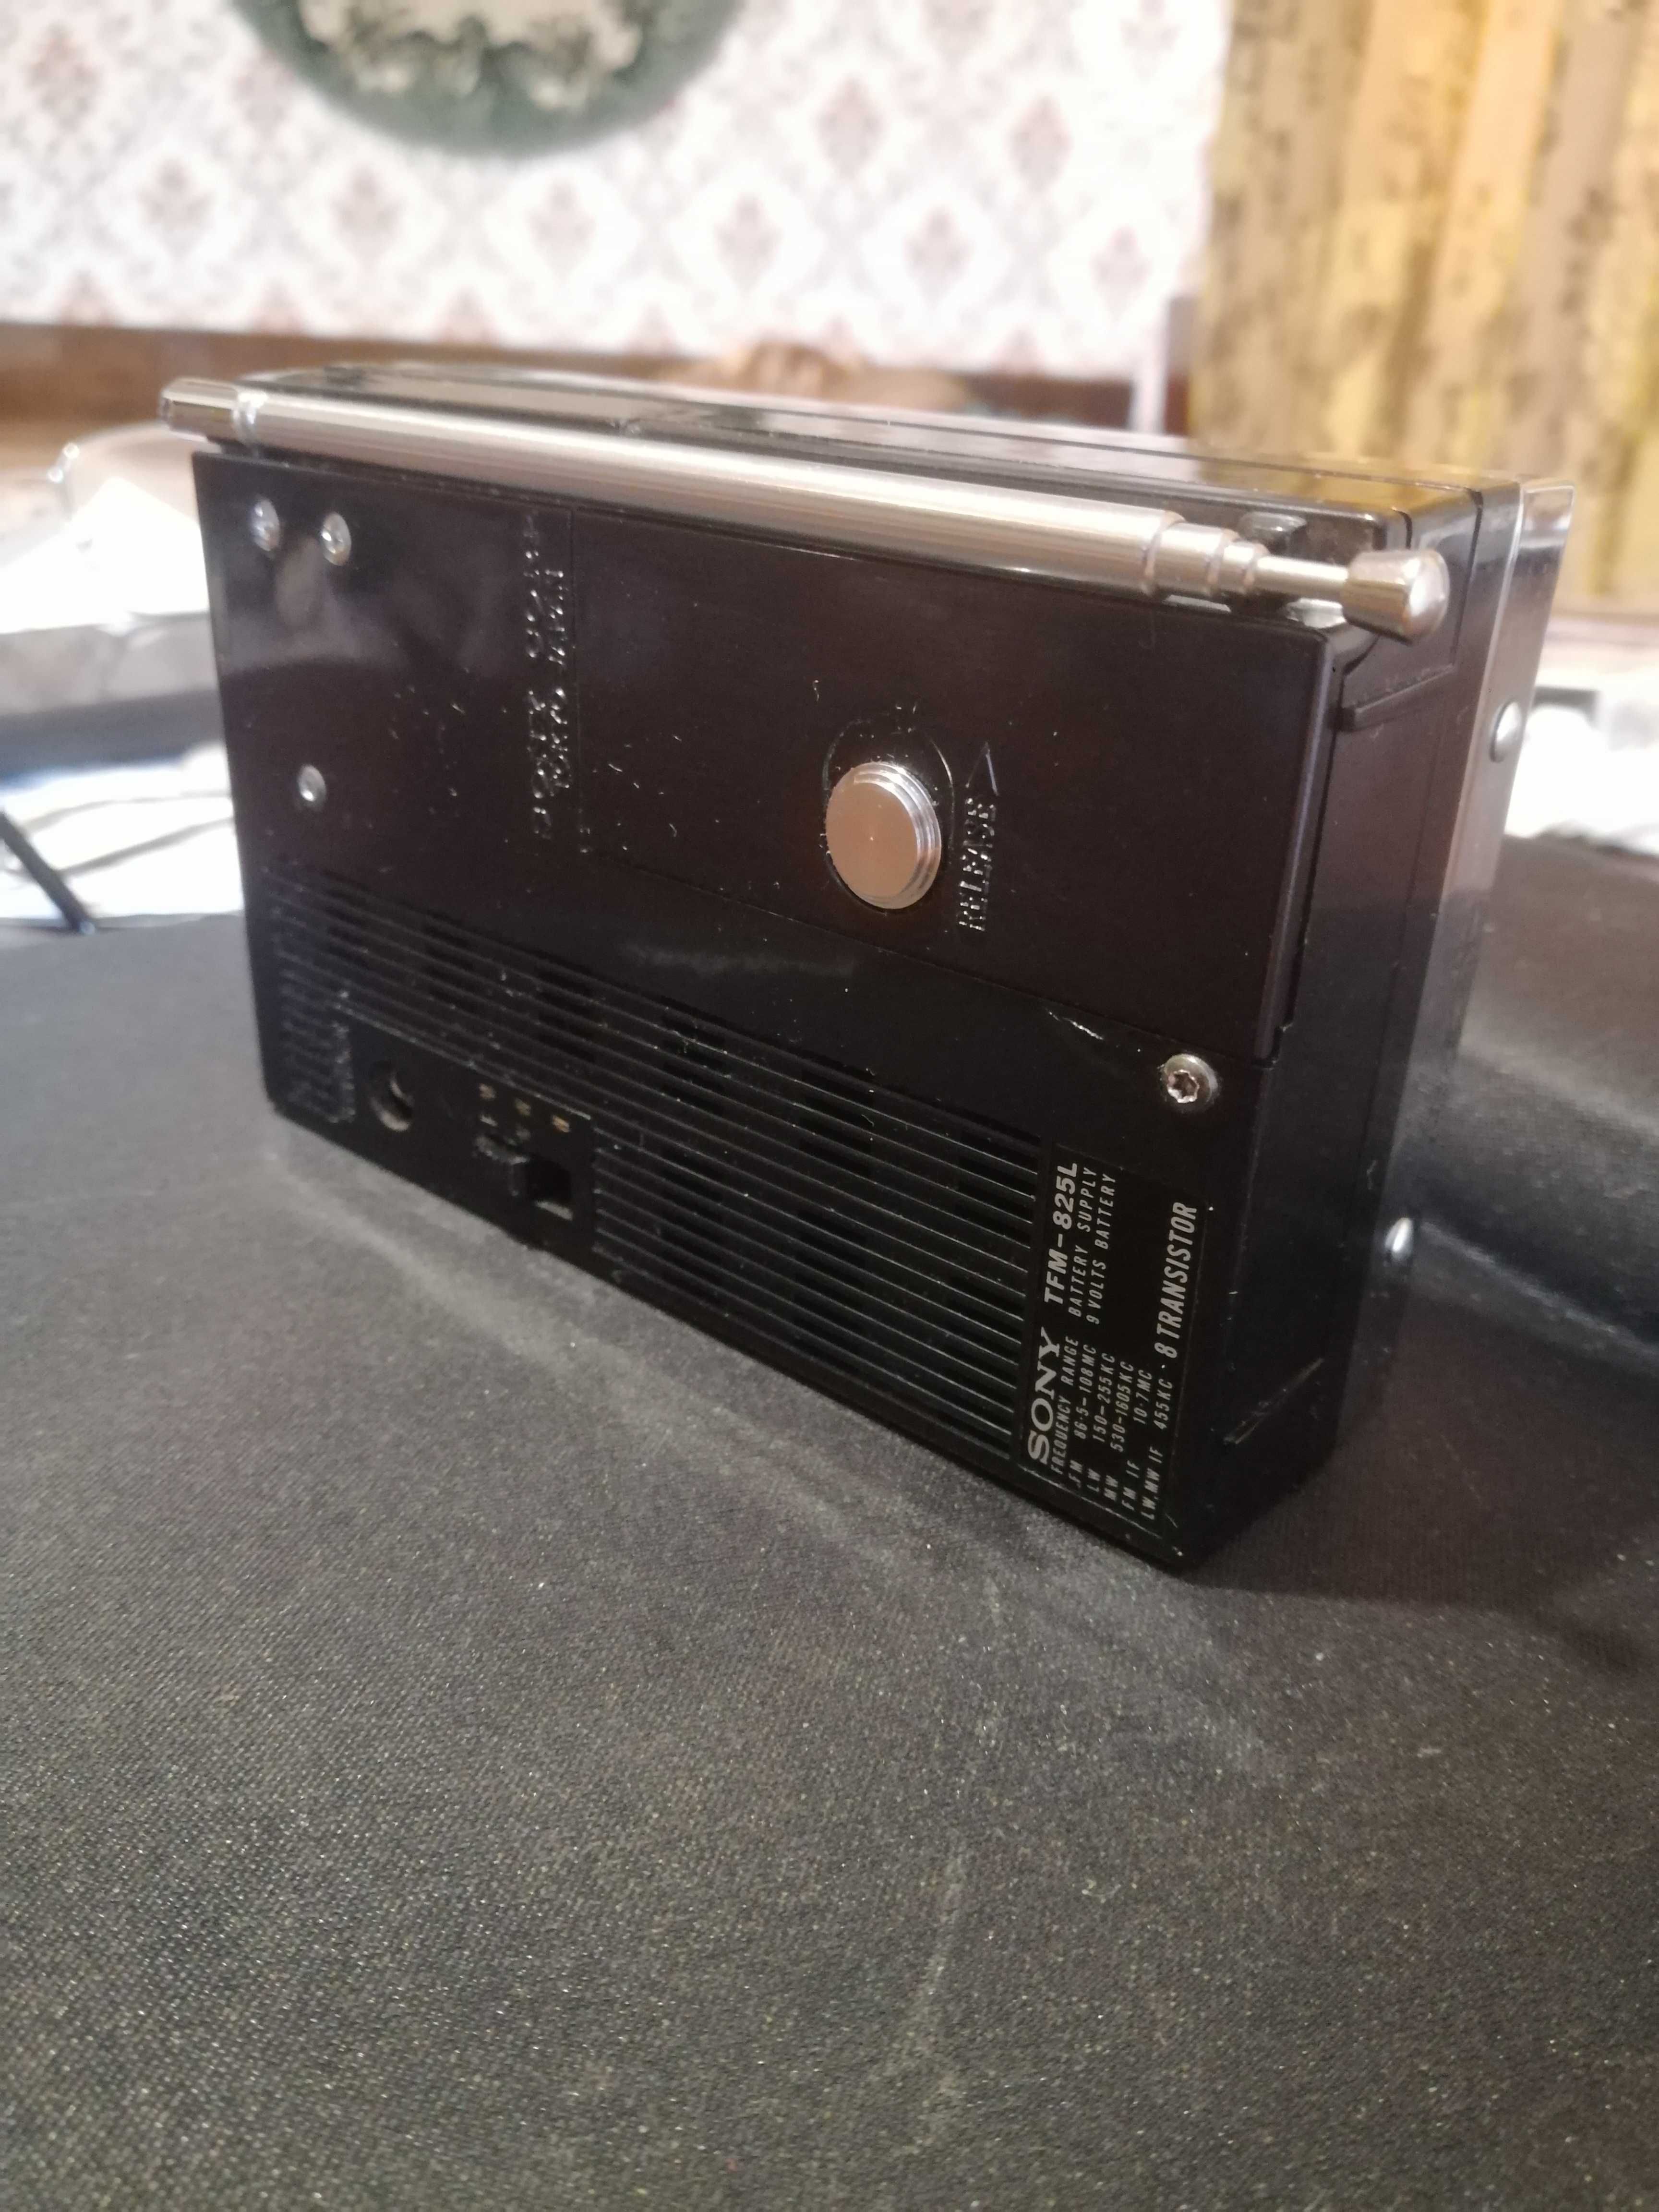 Радио приёмник Sony tfm-825L.Достаточно редкая модель 1964 года.